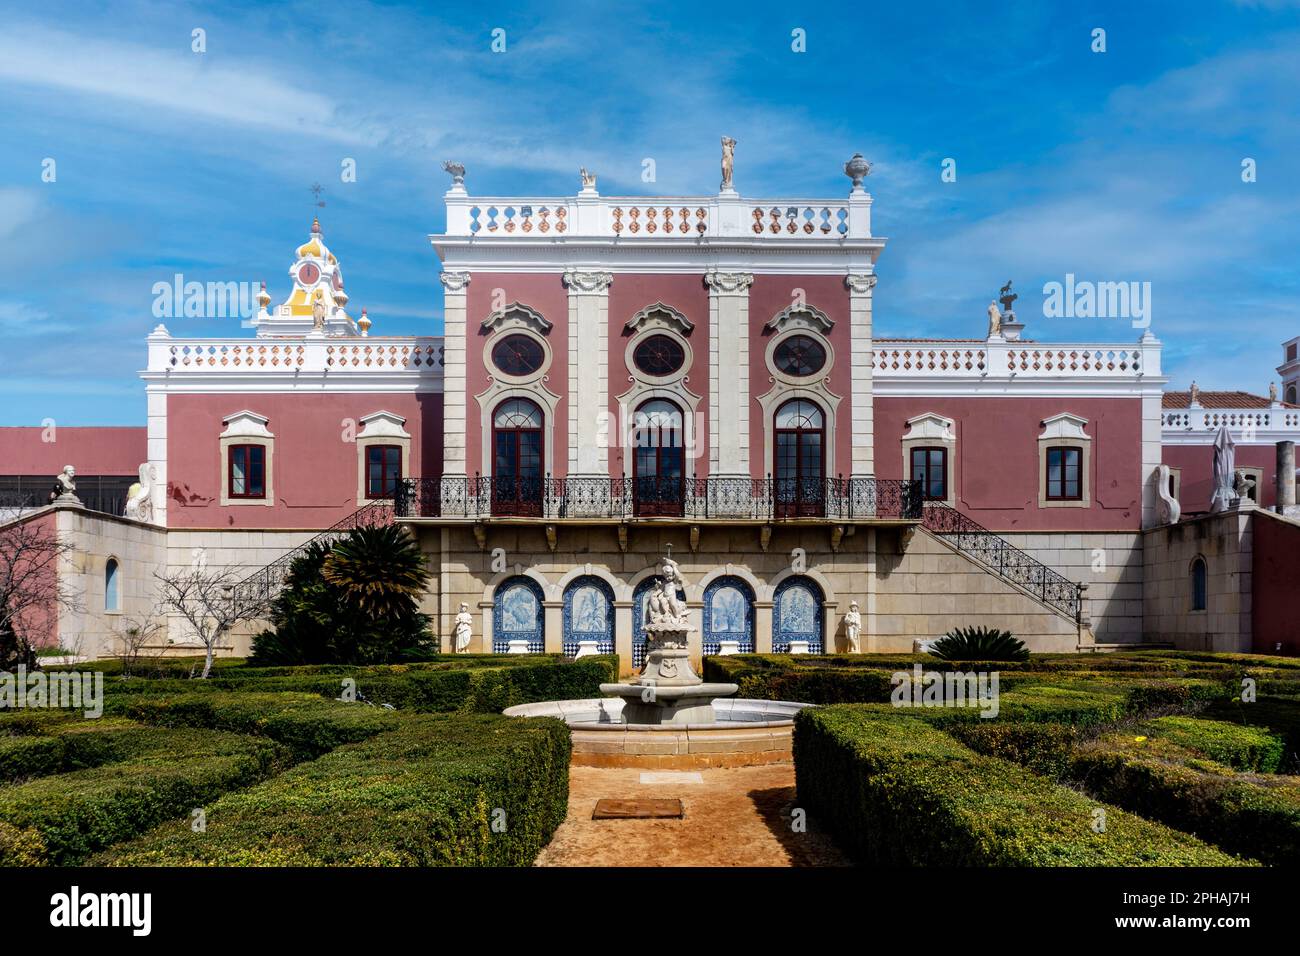 Das Estoi Palace Hotel in Portugal. Ein Gebäude, das seine Geschichte bis ins Jahr 1780er zurückverfolgen kann und im Rokoko-Stil erbaut ist. Stockfoto